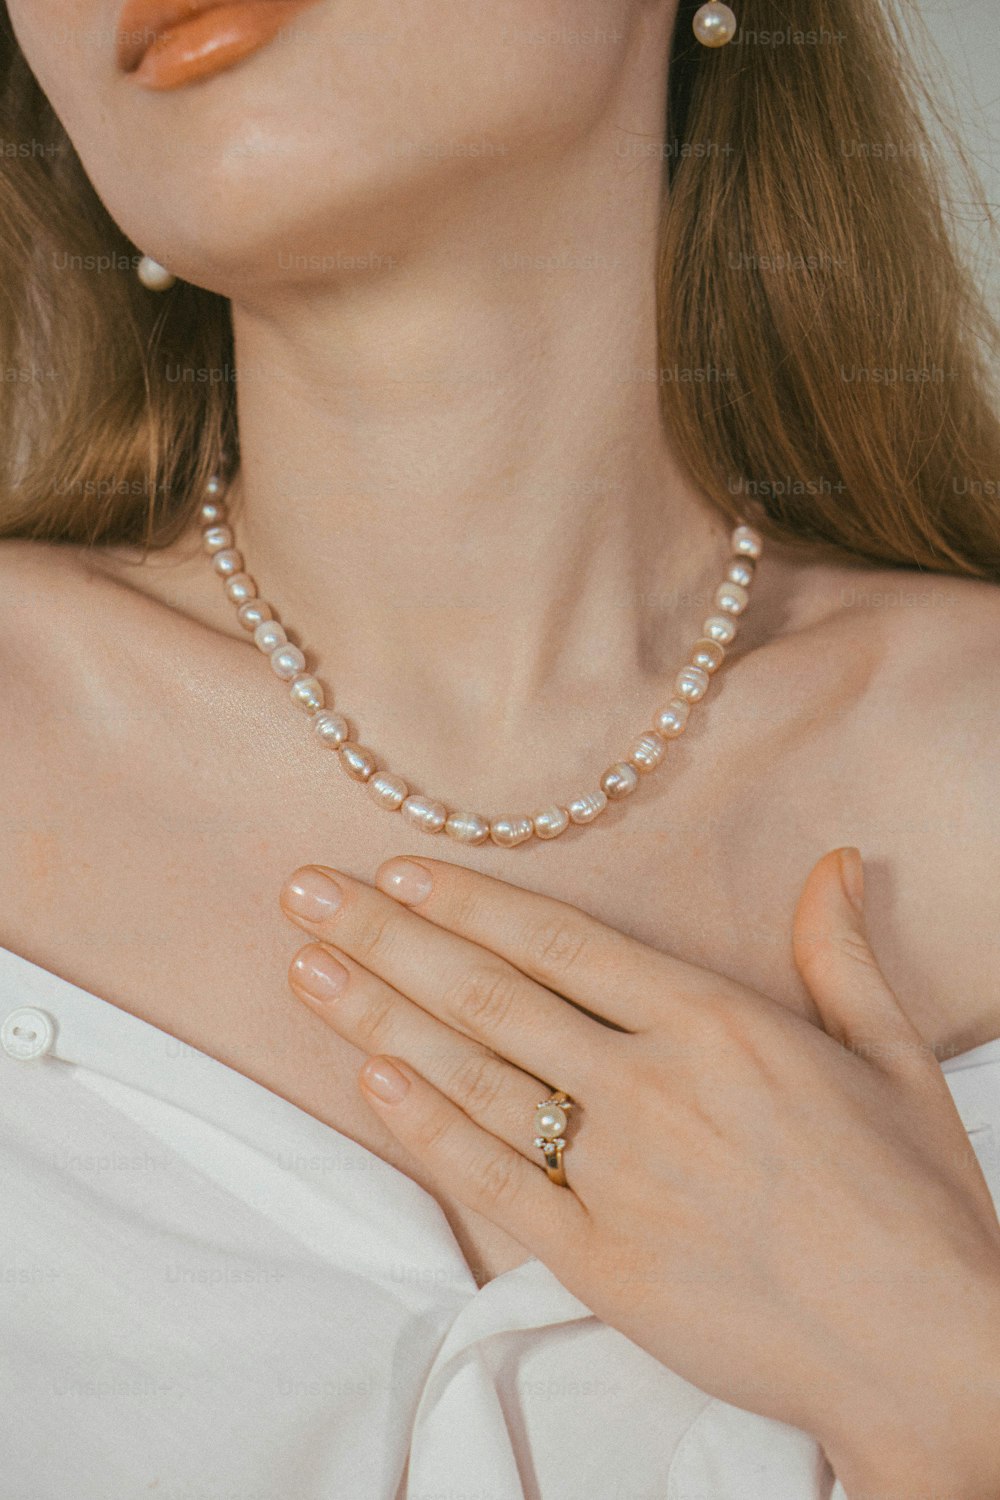 Eine Frau trägt eine Perlenkette und einen Ring